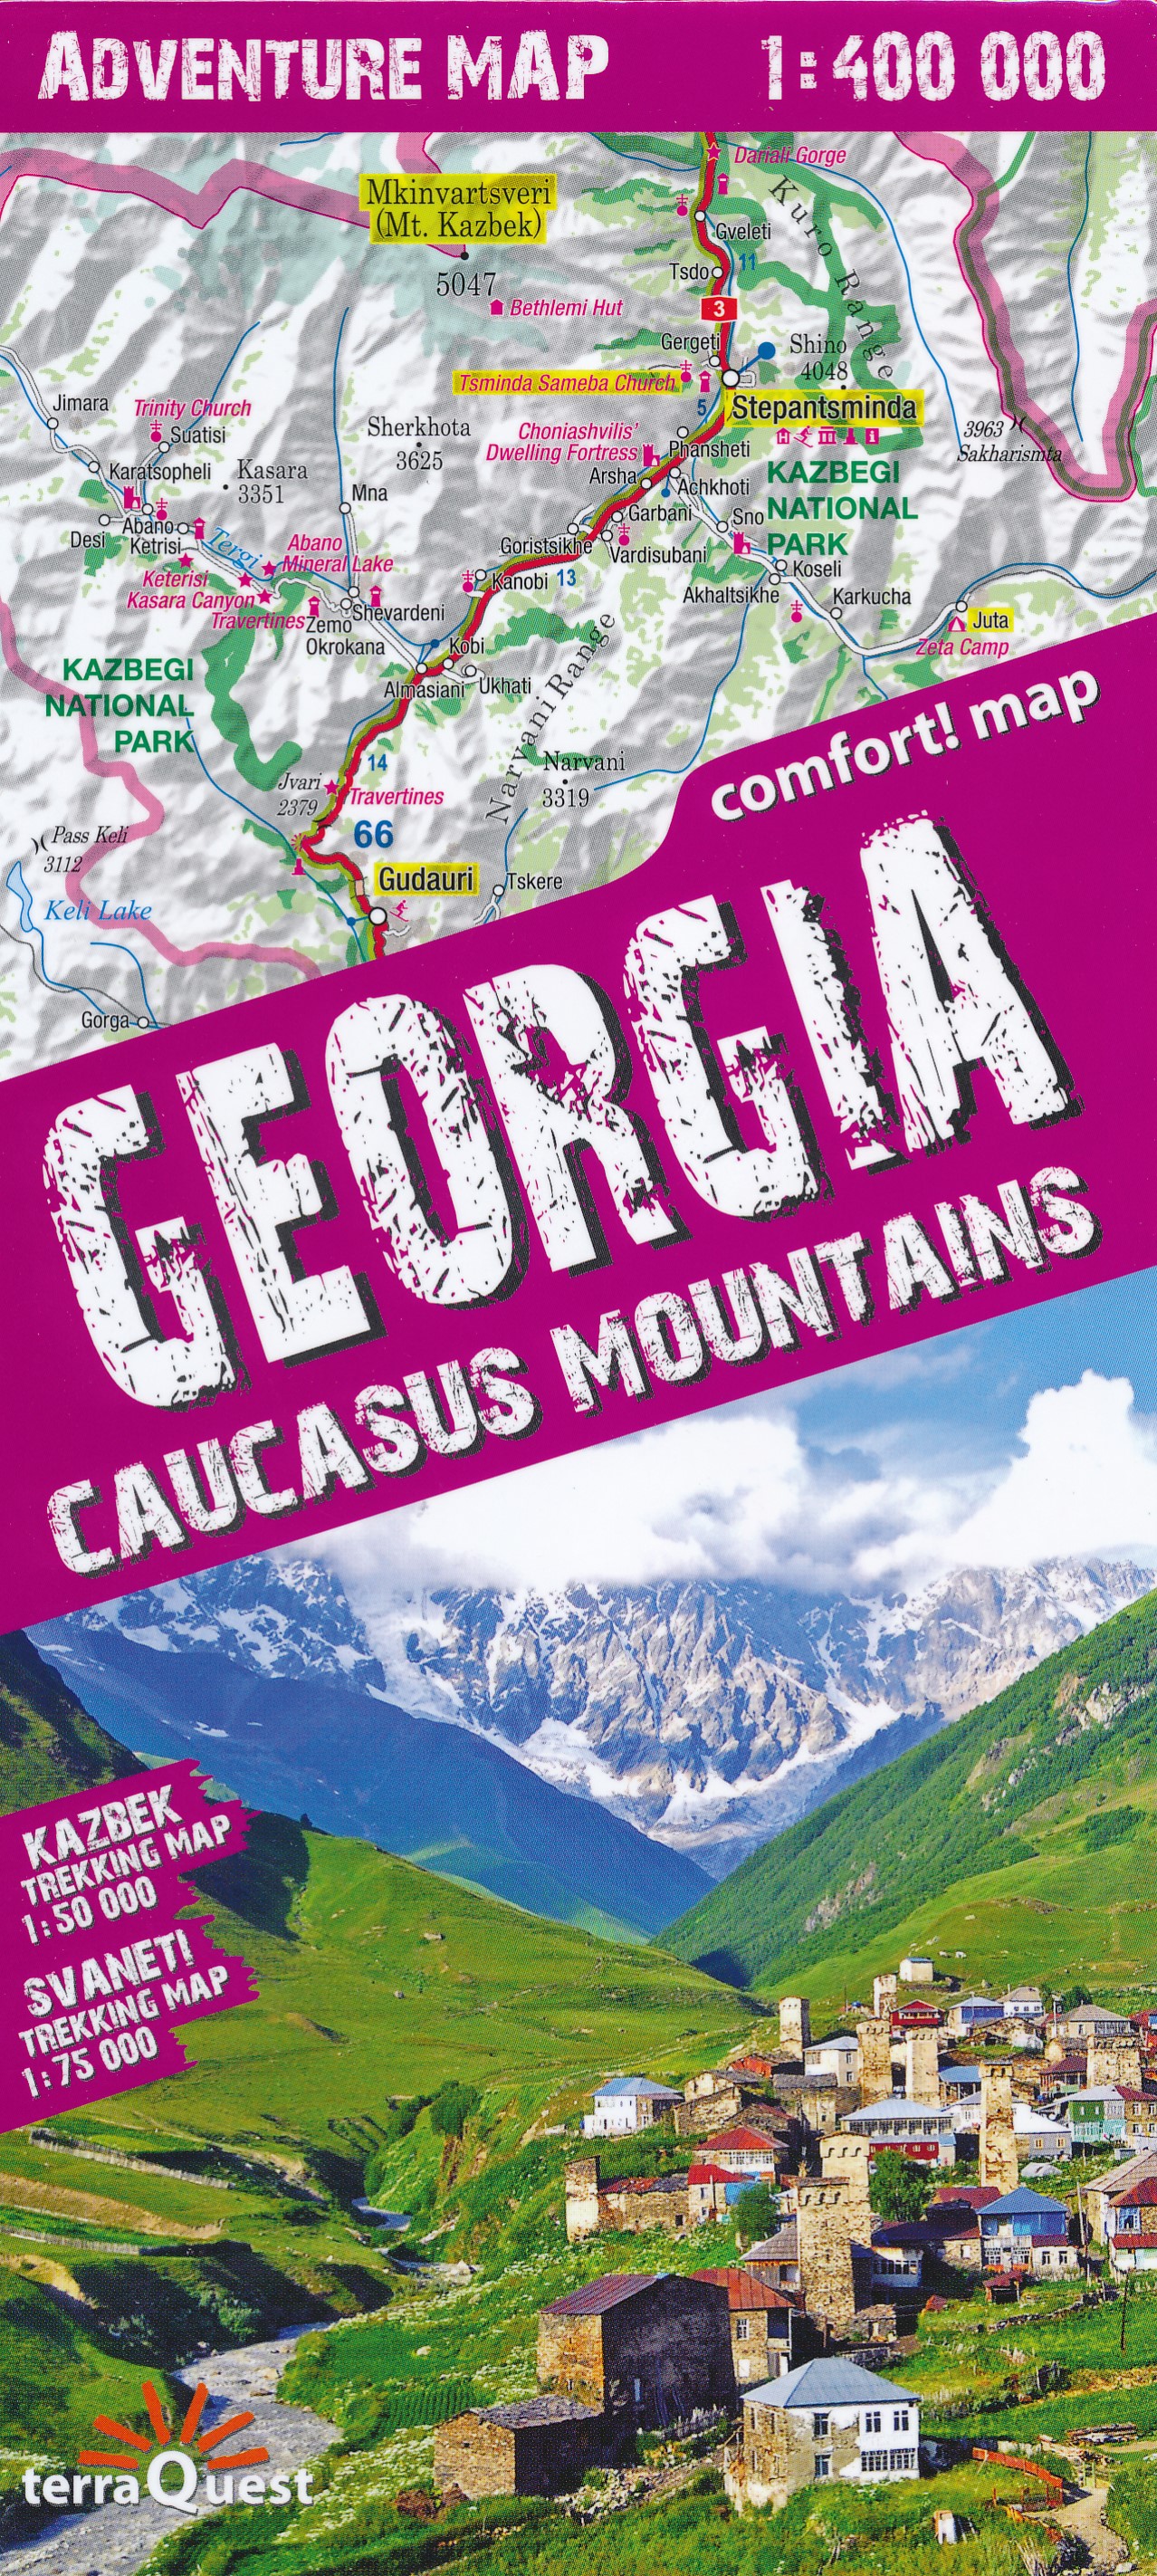 Online bestellen: Wandelkaart - Wegenkaart - landkaart Adventure map Georgië - Kaukasus - Caucasus | TerraQuest